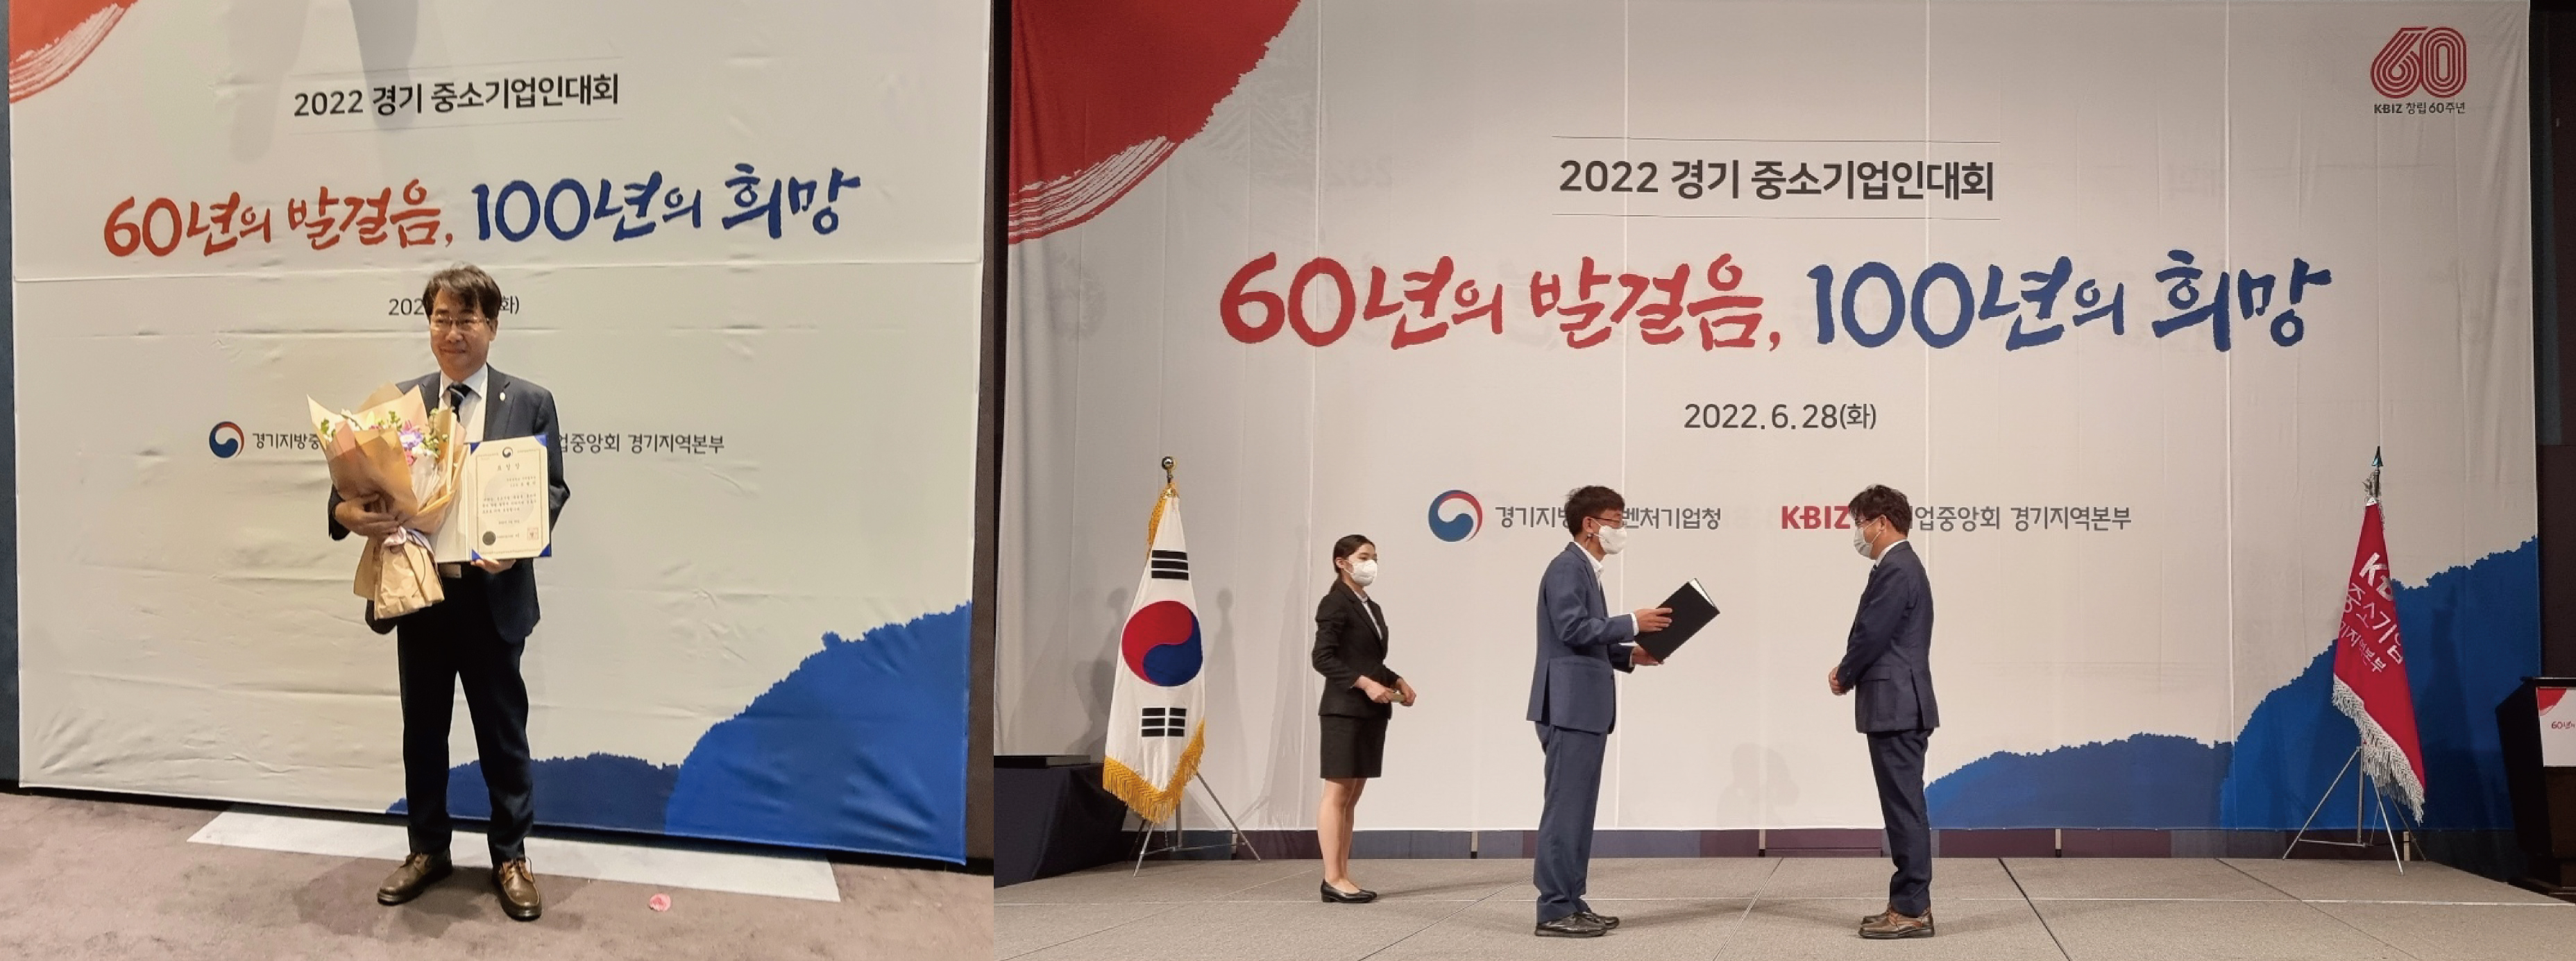 부천대학교 오형민교수, 2022 중소기업인대회에서 중소벤처기업부 「장관상」 수상